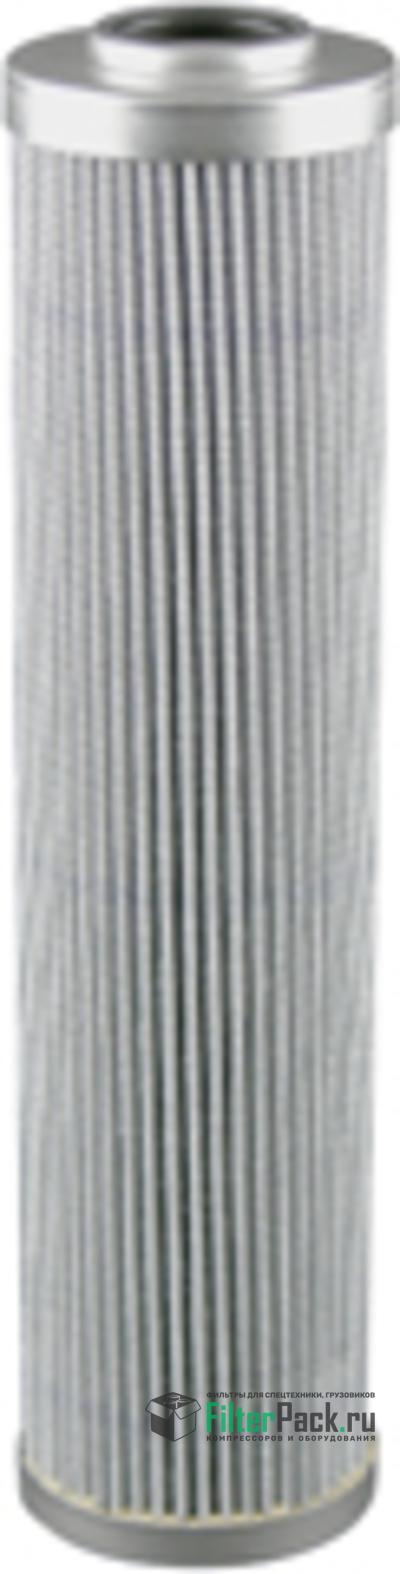 Baldwin H9114 гидравлический фильтр элемент